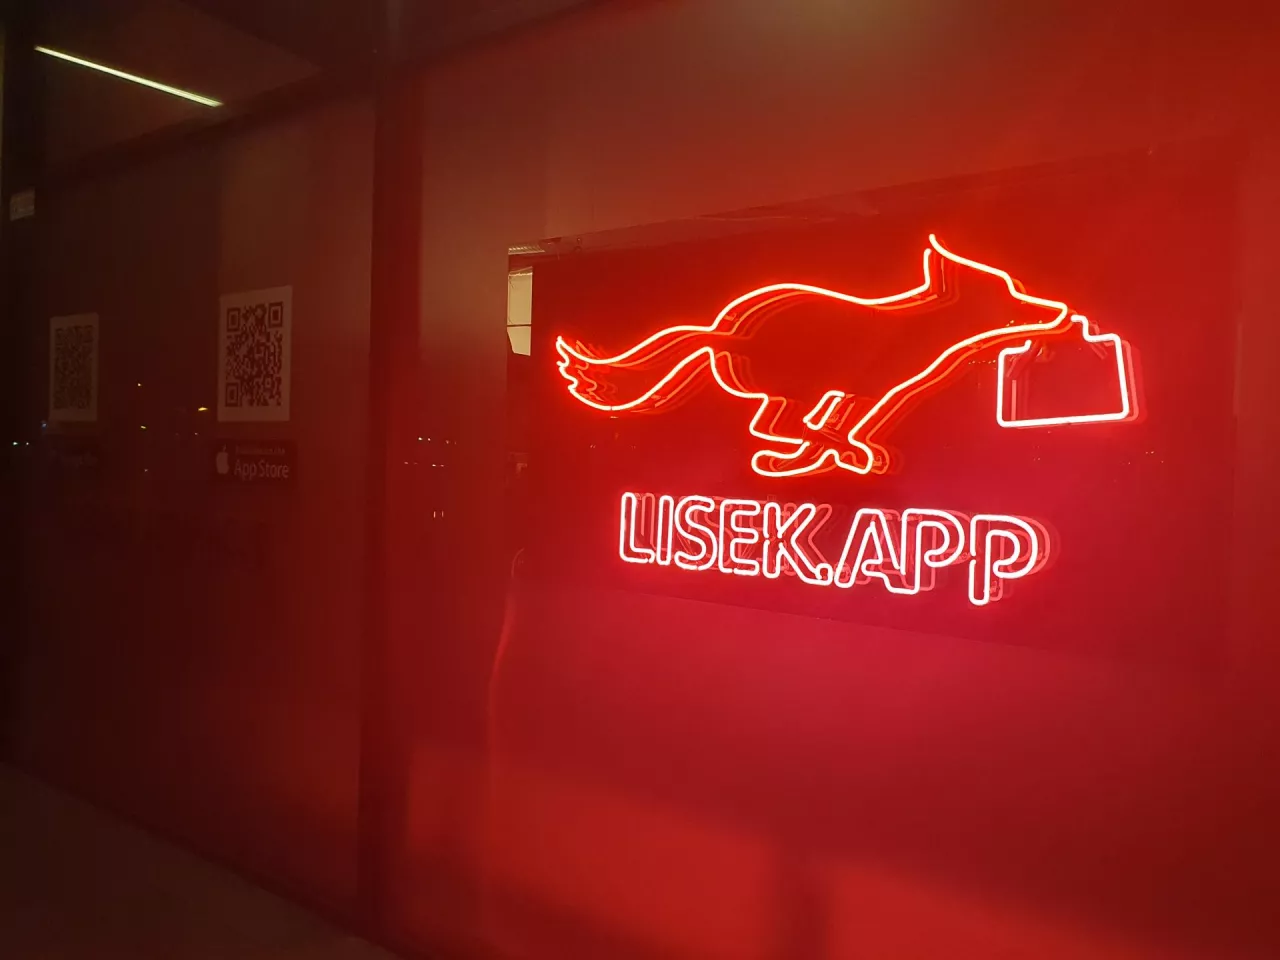 Platforma Lisek.app uruchomiła dark store w Miasteczku Wilanów w Warszawie (fot. wiadomoscihandlowe.pl)